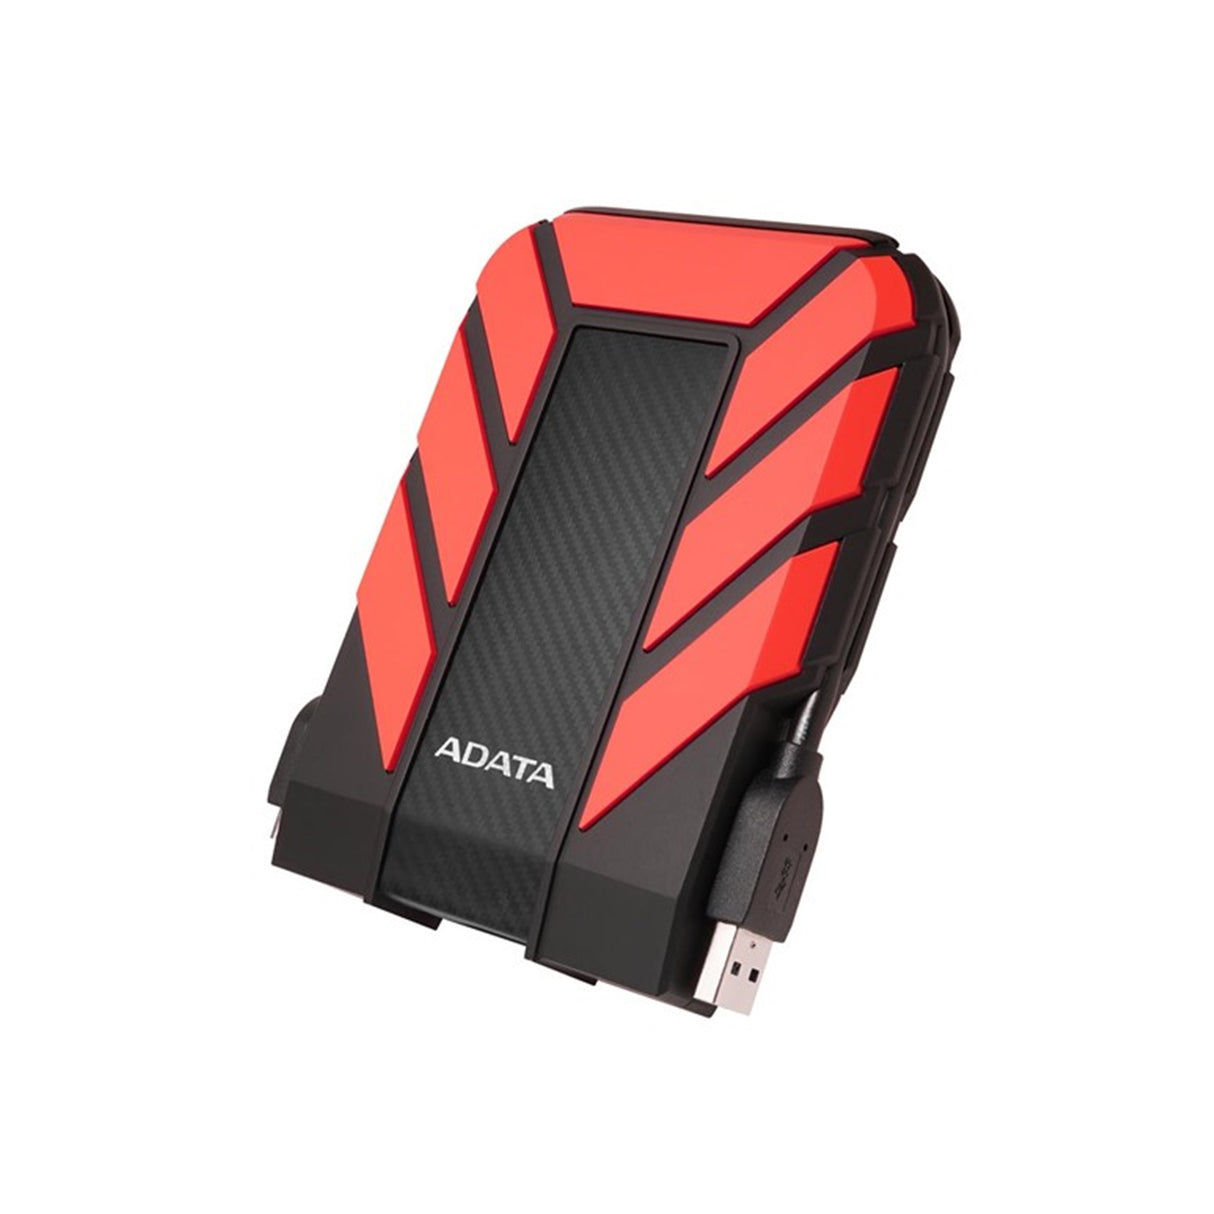 Adata HD710 Pro Durable 1 To USB 3.1 Disque dur externe portable IP68 étanche, résistant aux chocs, à la poussière, rouge